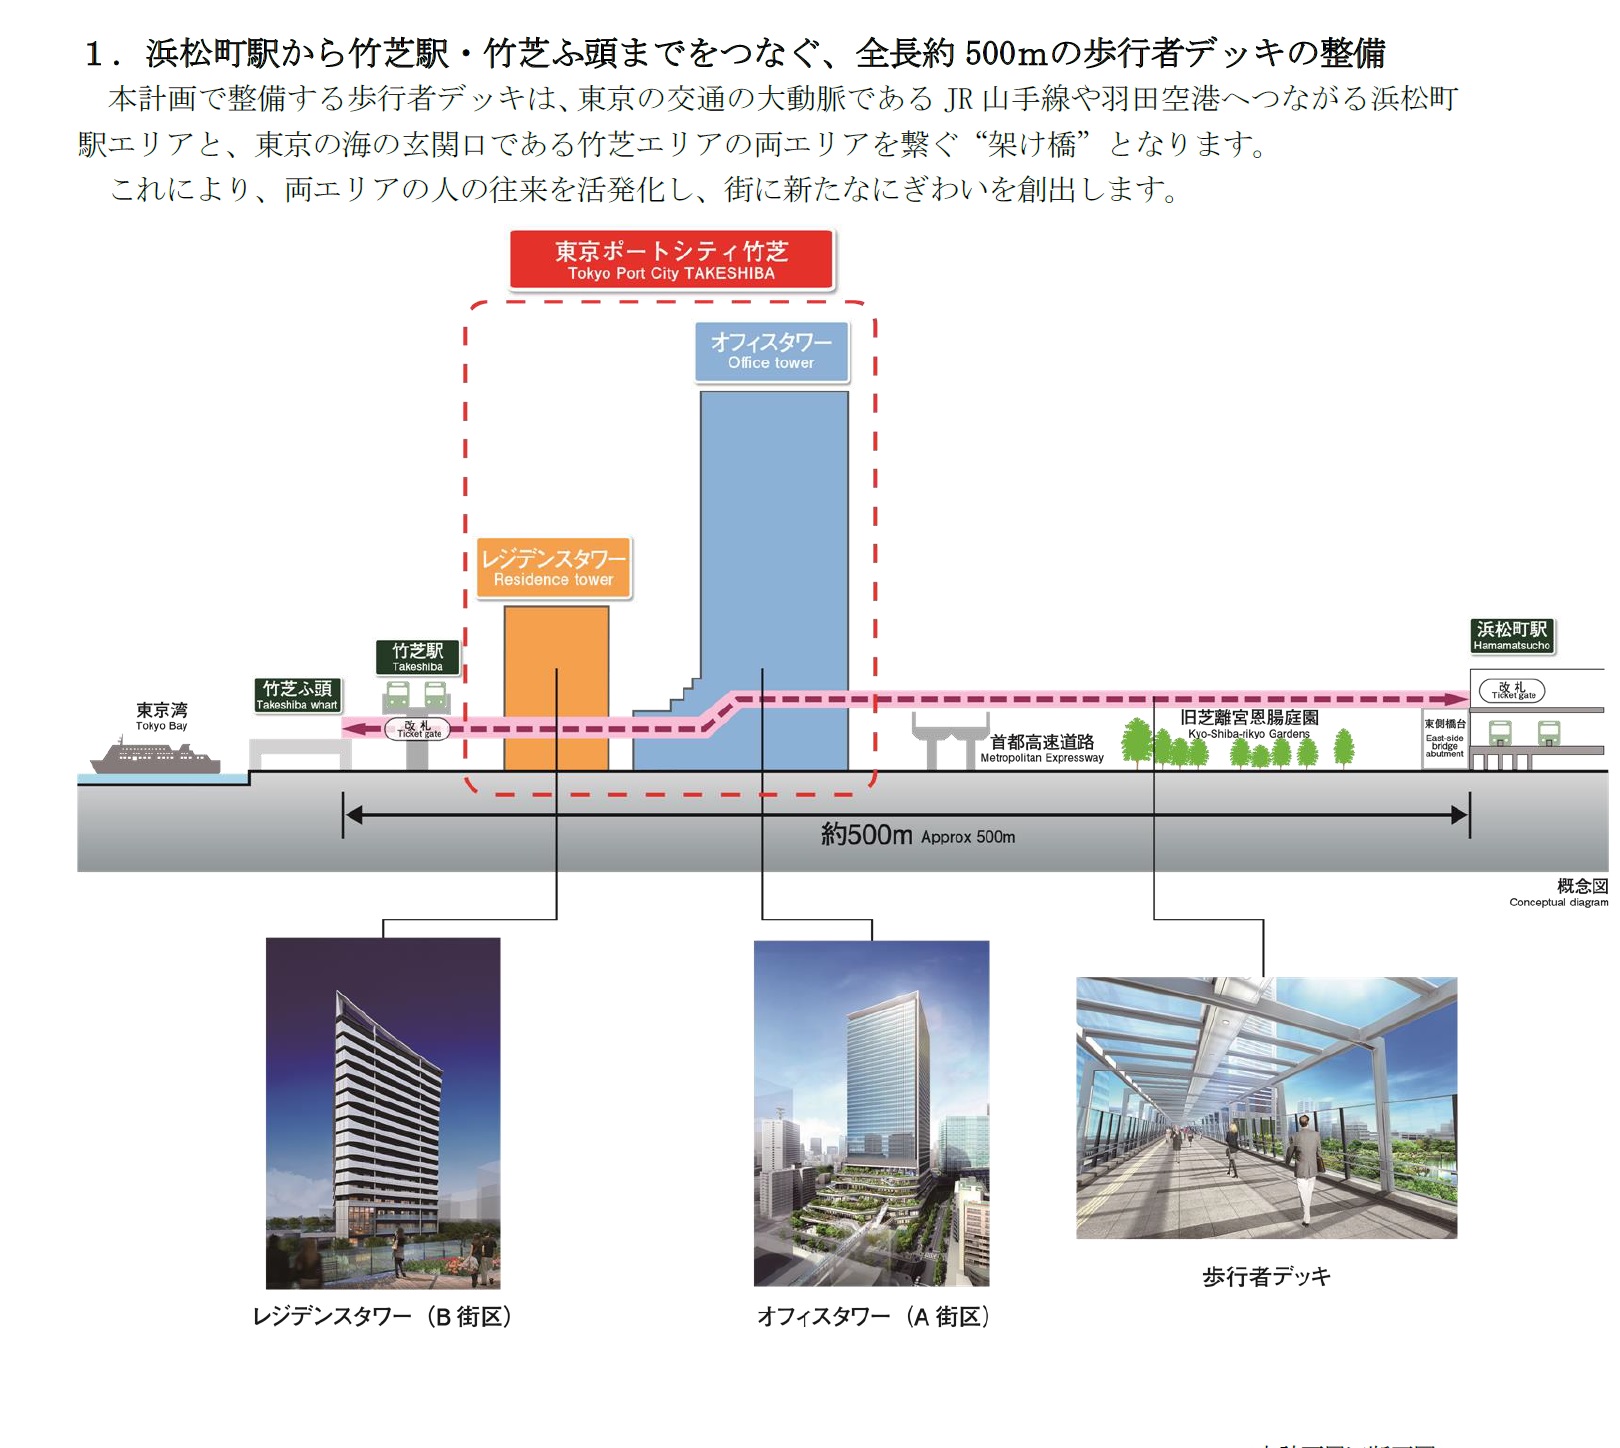 【2020年9月14日】東京ポートシティ竹芝の歩行者デッキを視察しました